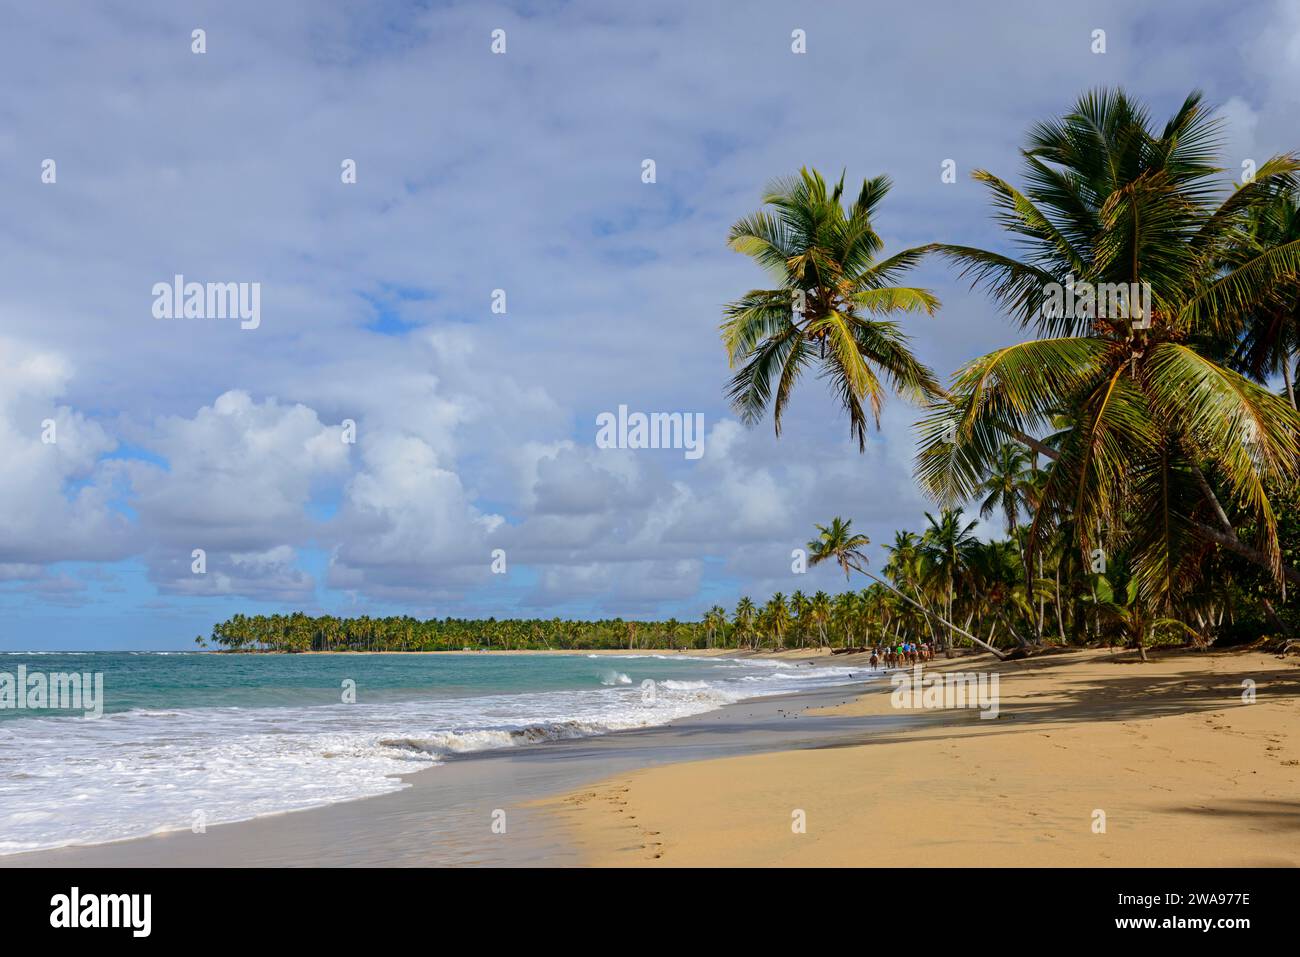 Ein einsamer Strand mit Kokospalmen unter einem leicht bewölkten Himmel in der Nähe eines ruhigen Meeres, Strand von Limon, El Limón, El Seibo, Dominikanische Republik, Hispaniola, Karibik Stockfoto